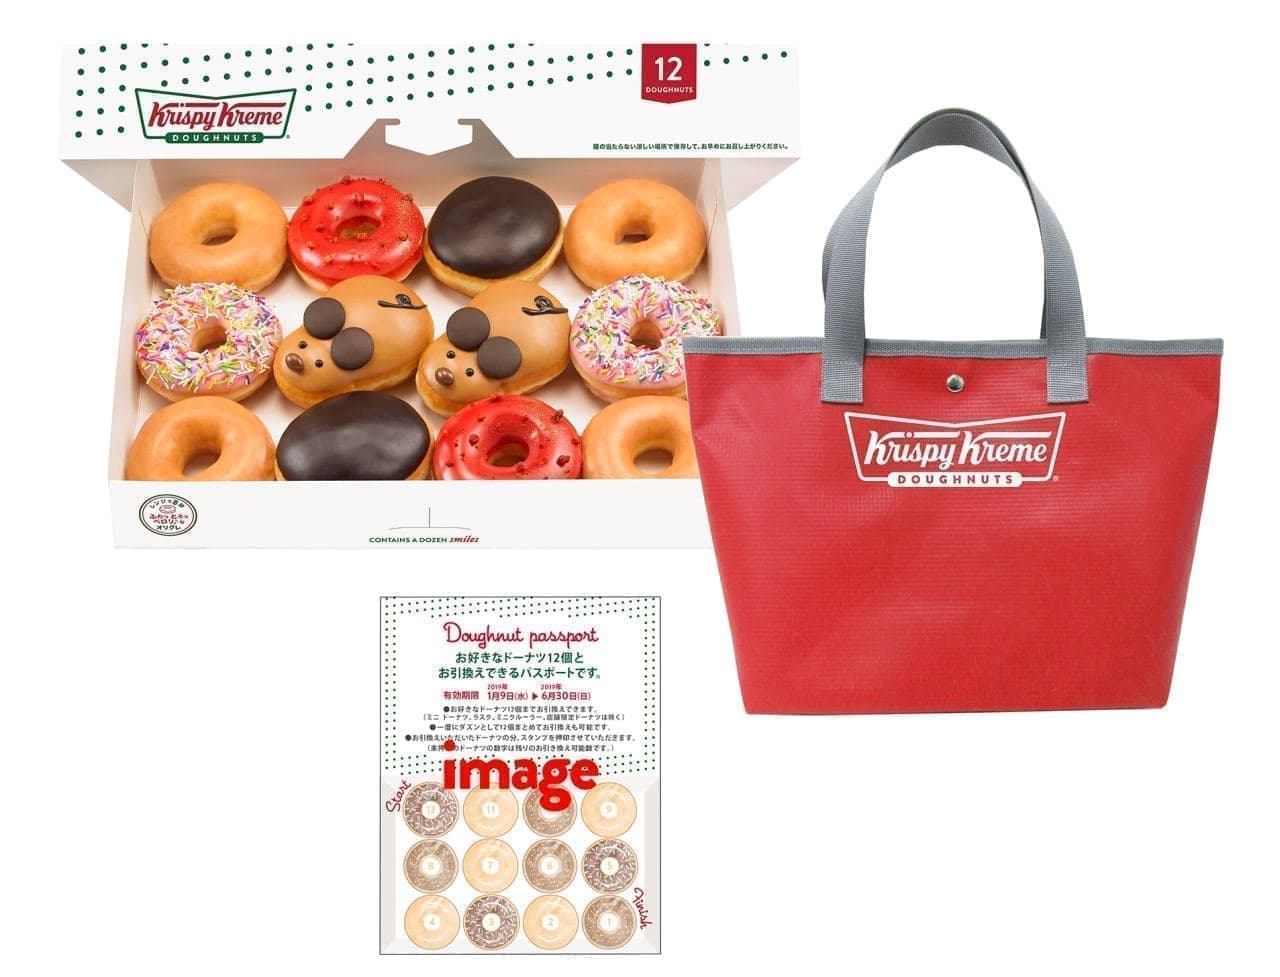 "Crispy cream donut lucky bag 2020" 3 days, limited quantity